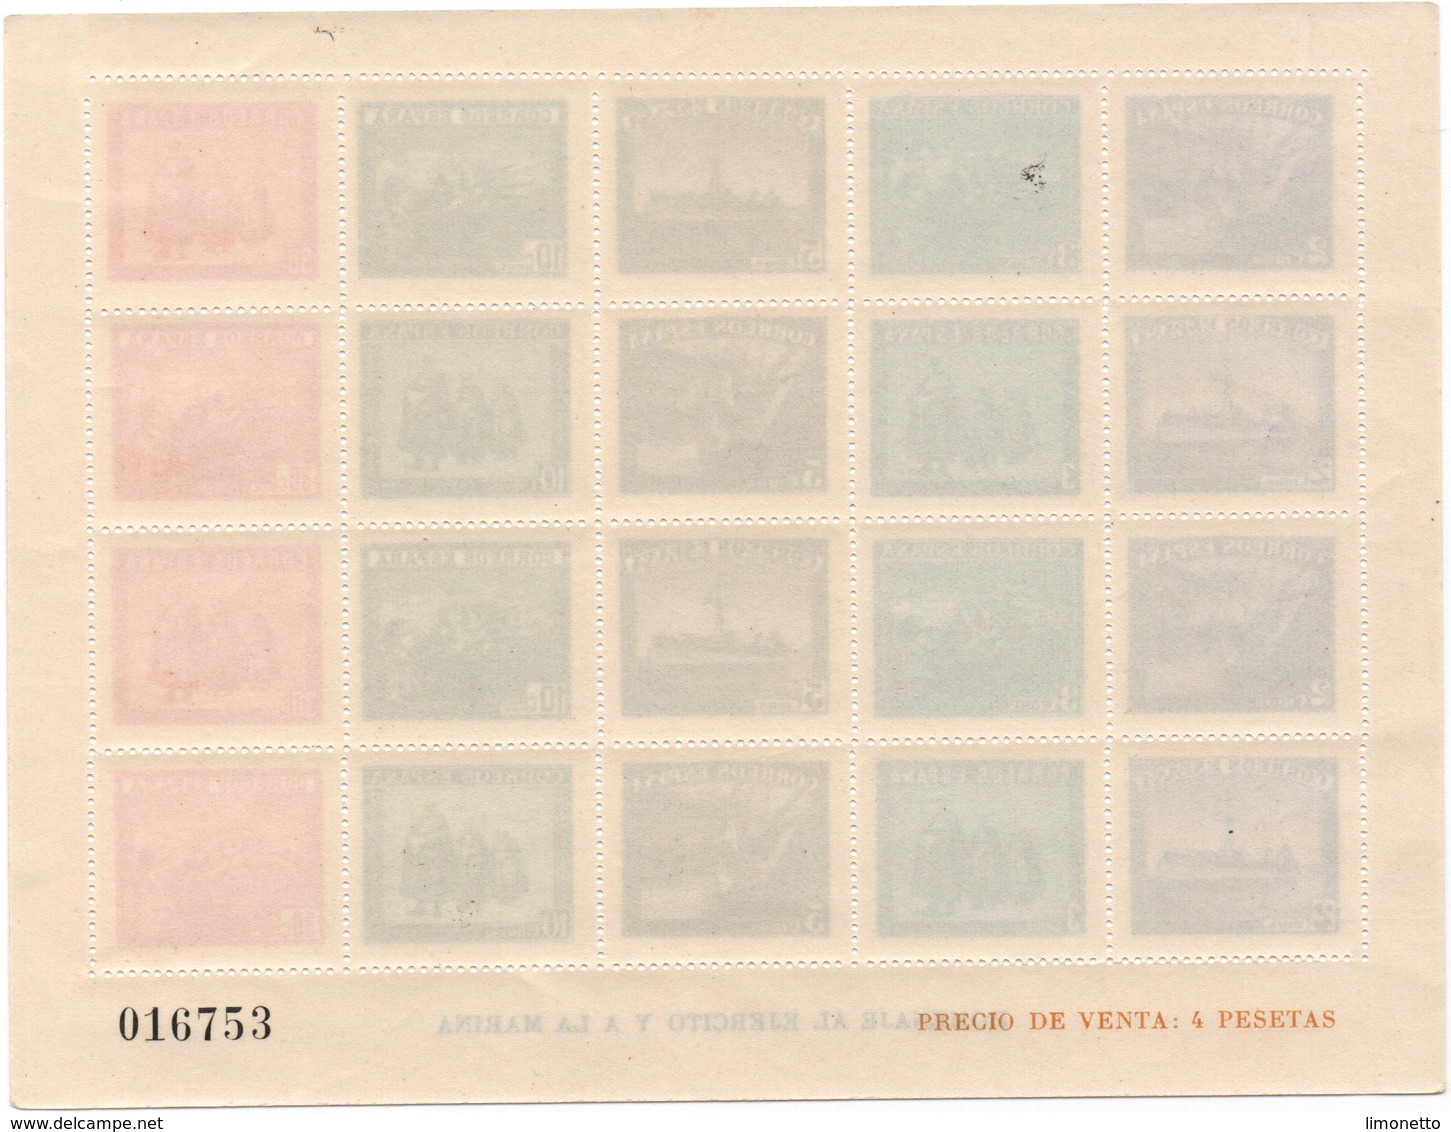 ESPAGNE- 1938- N+  Bloc Feuillet -Hommage A La Marine-  Dentelé- (n°016753)- Yvert N°12  Voir Scans - Blocs & Feuillets